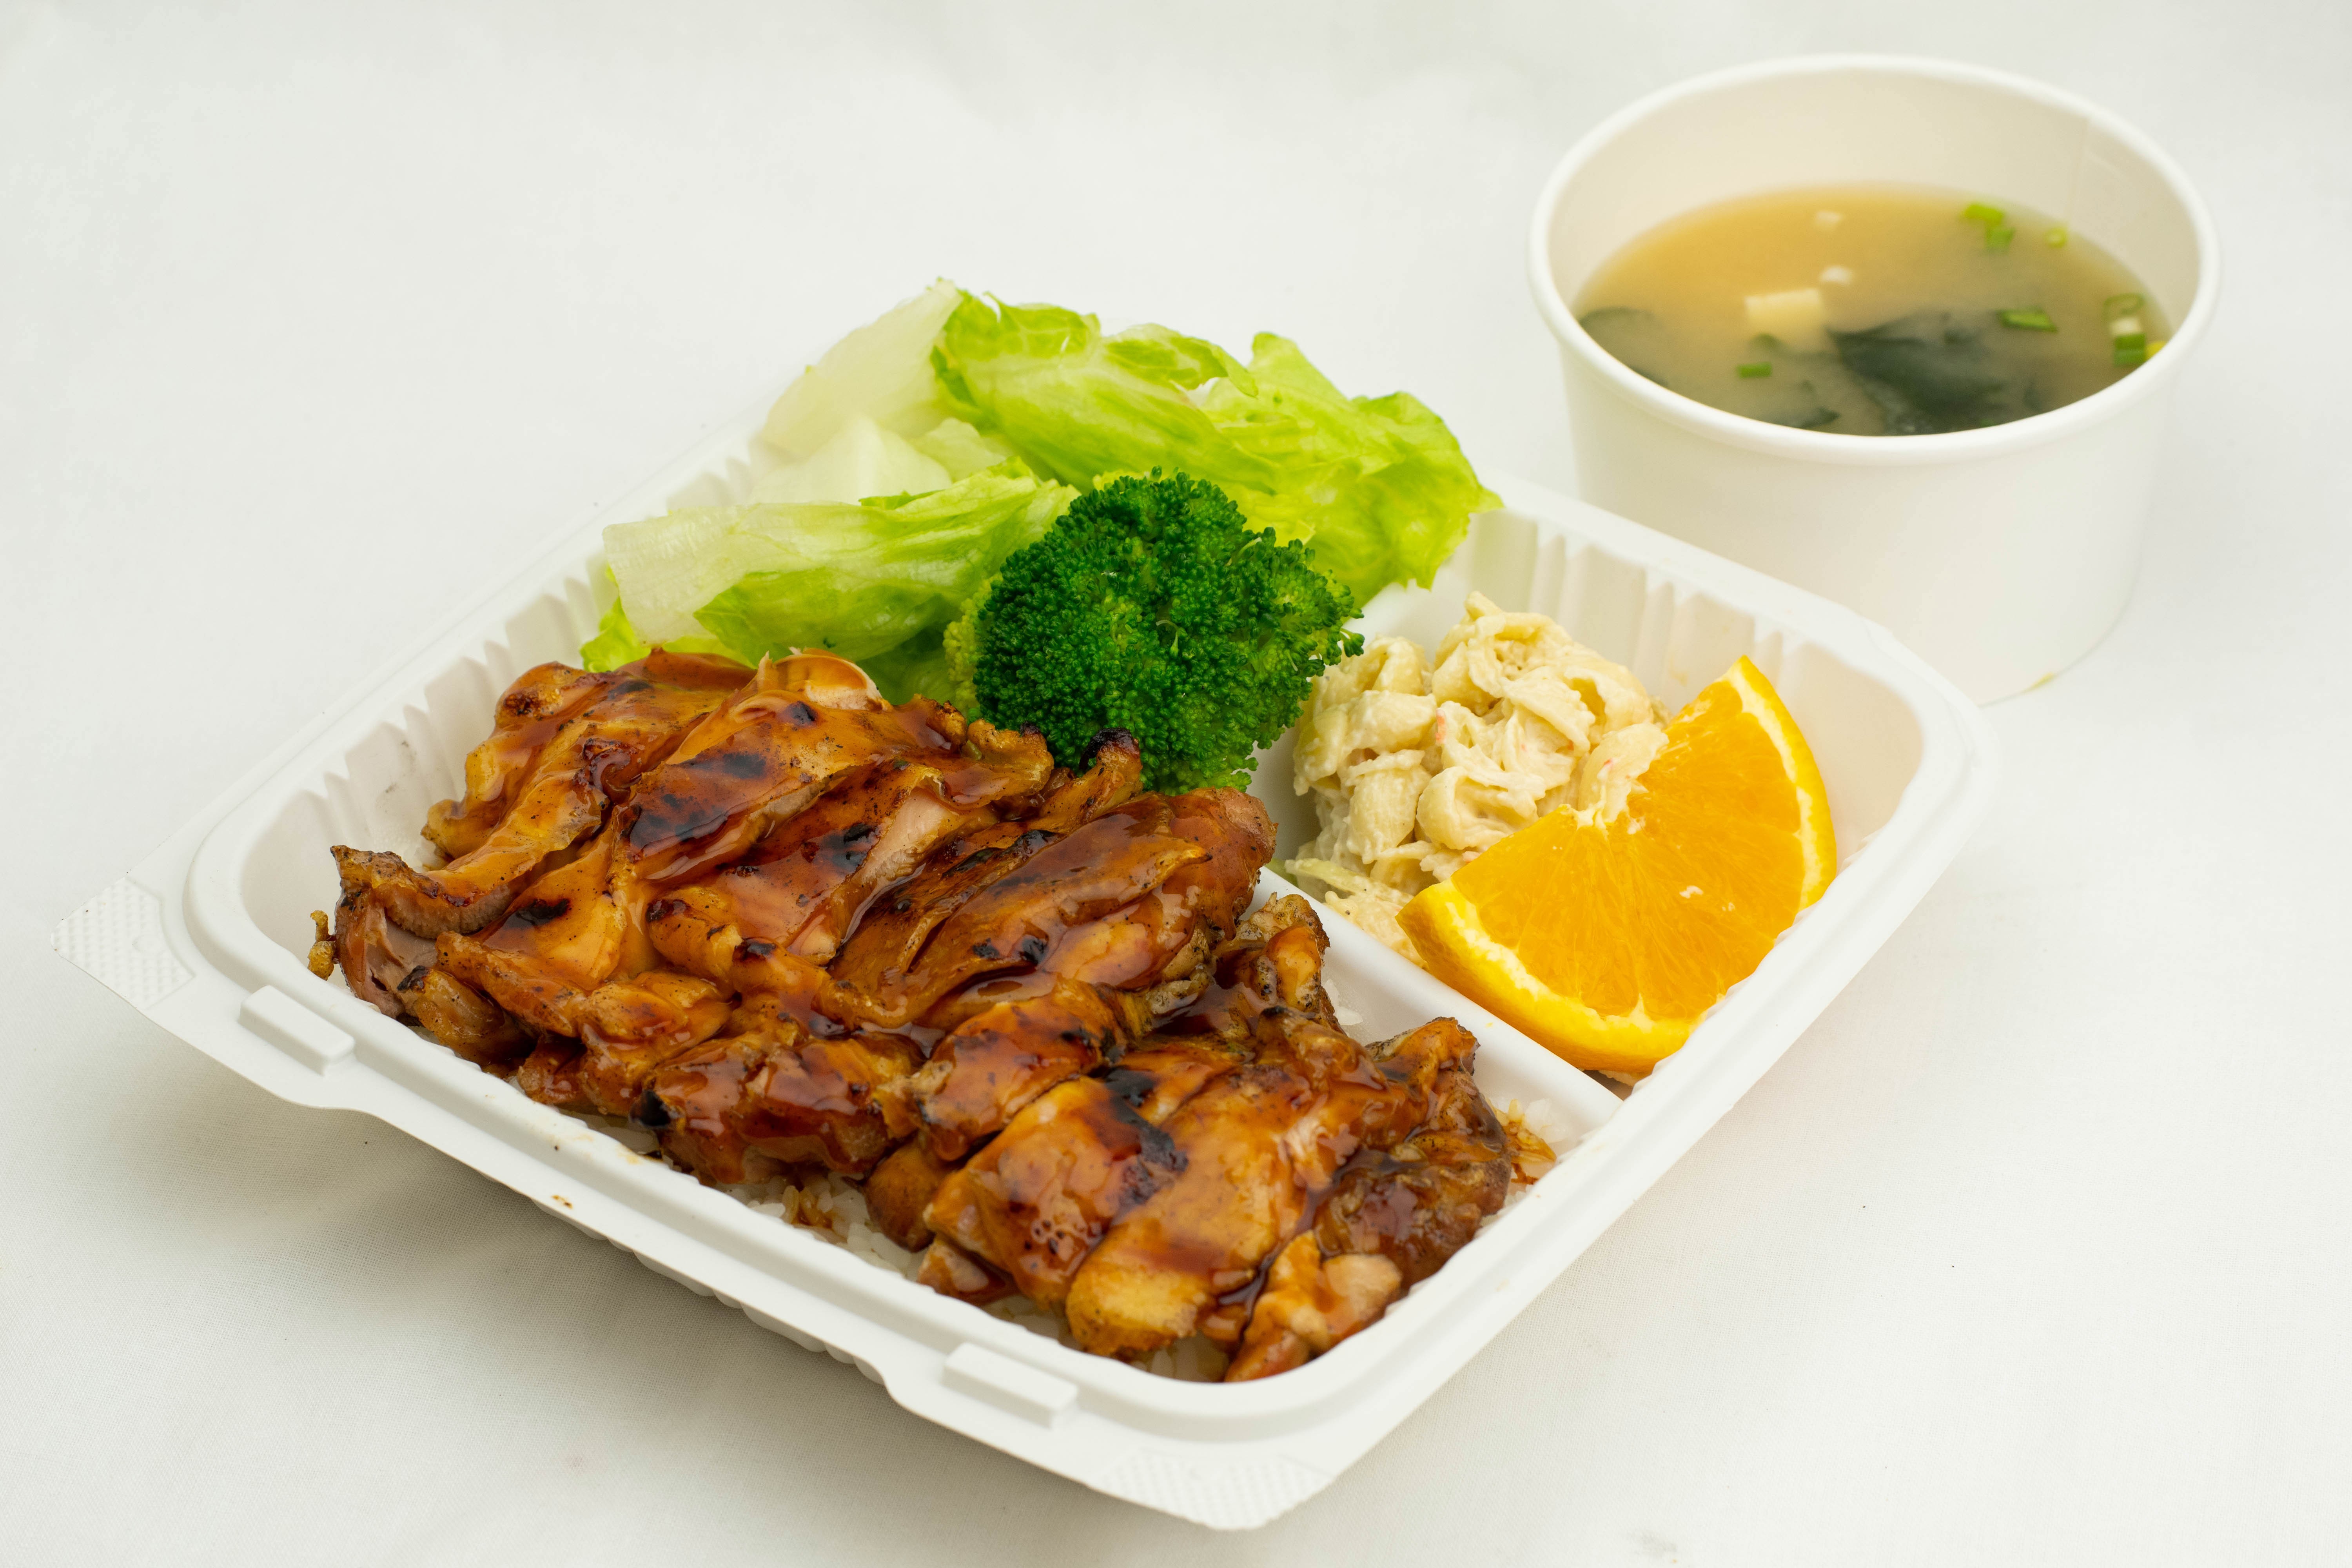 BBQ Tonkatsu Pork Bento Bowl Recipe